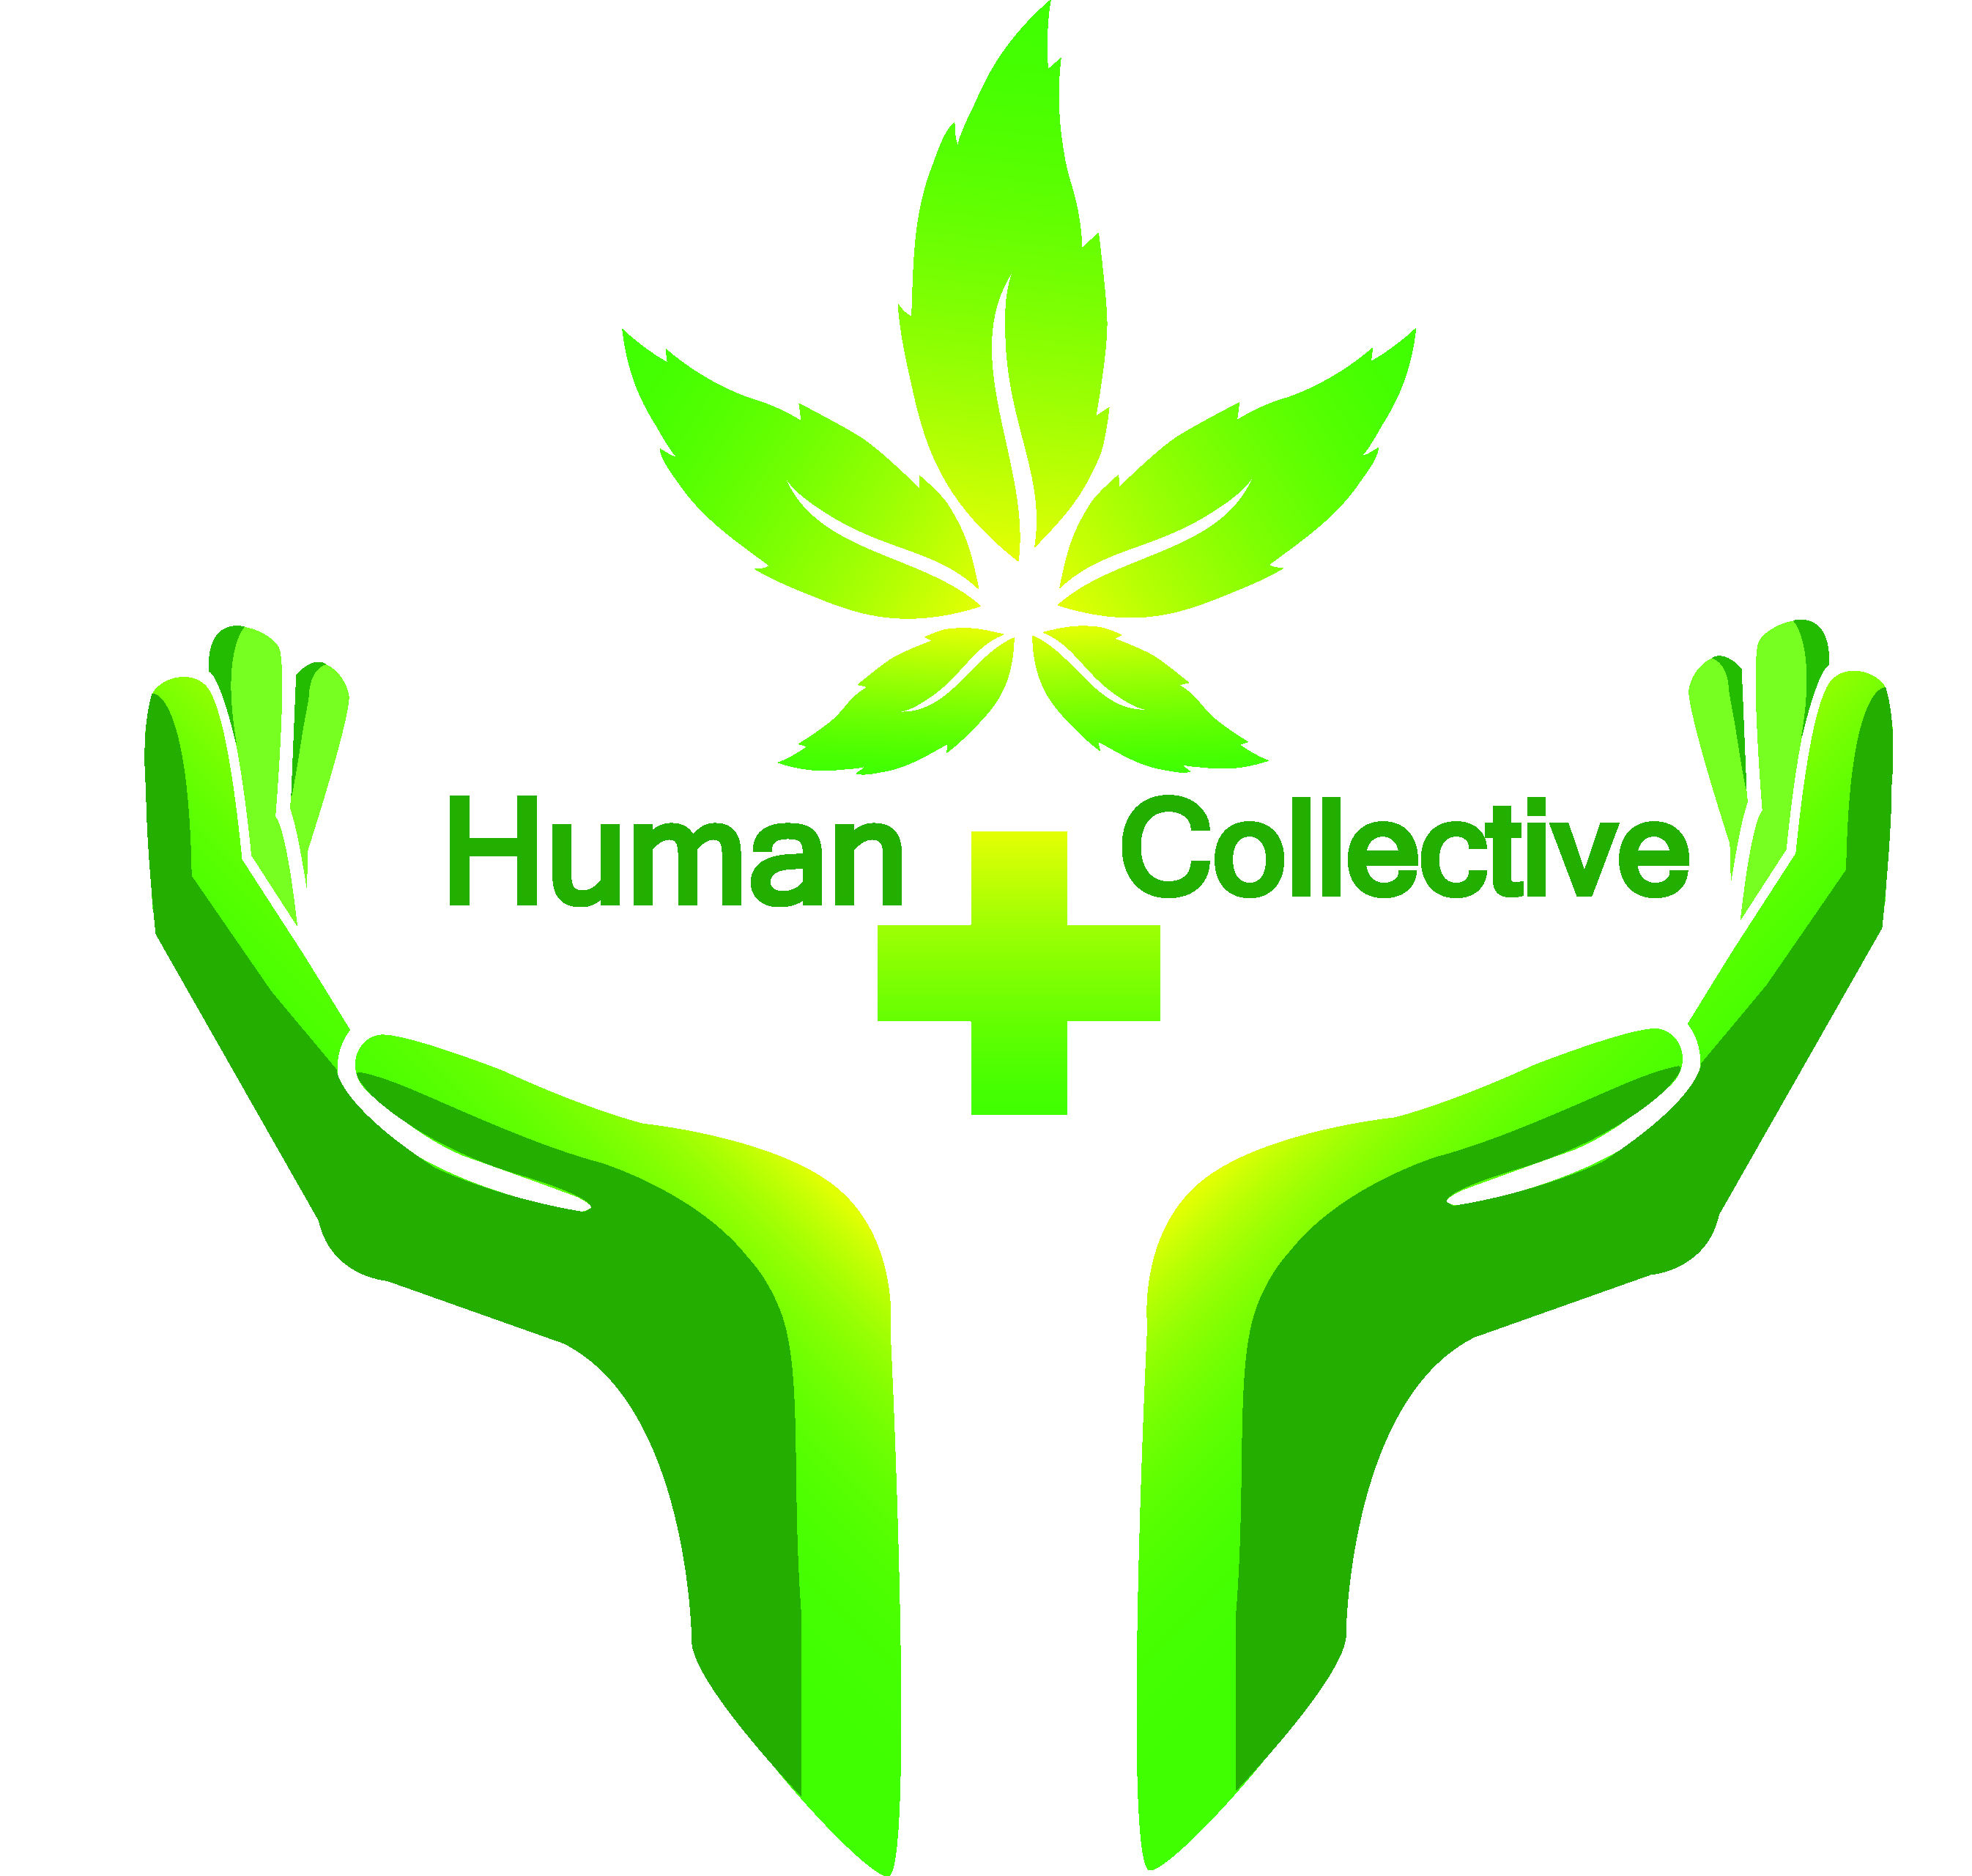 Human Collective